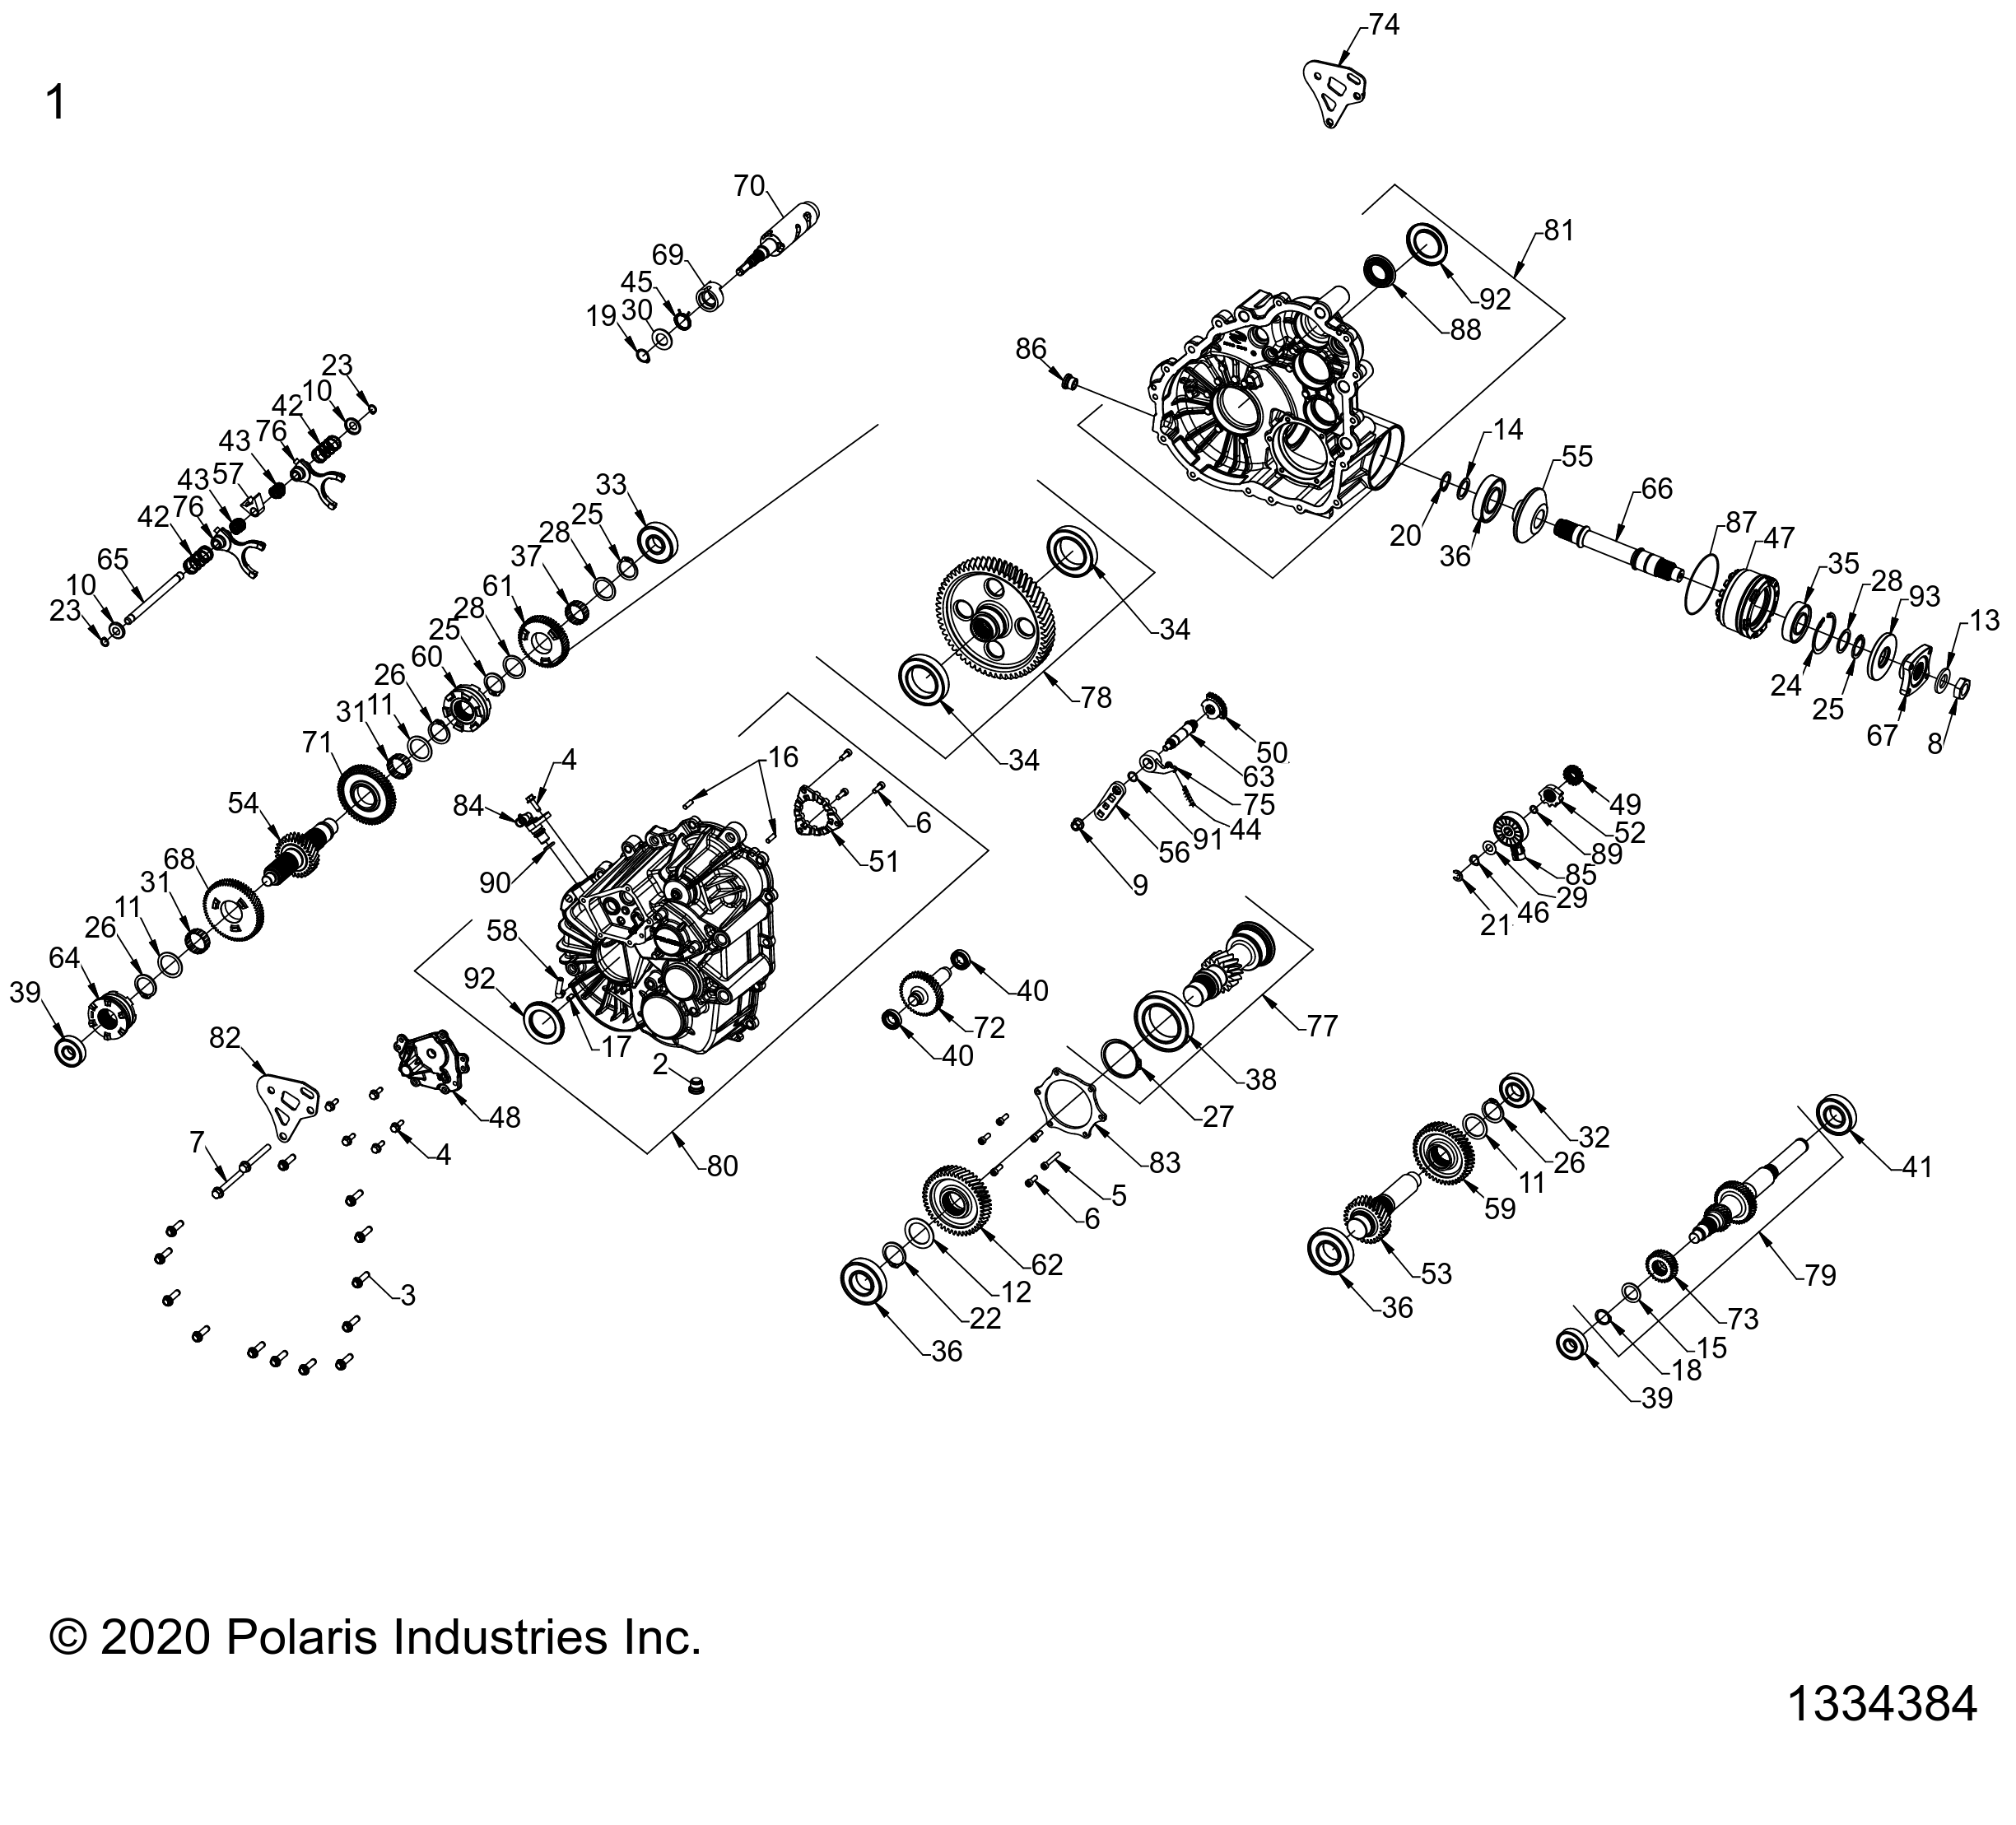 Foto diagrama Polaris que contem a peça 3235815